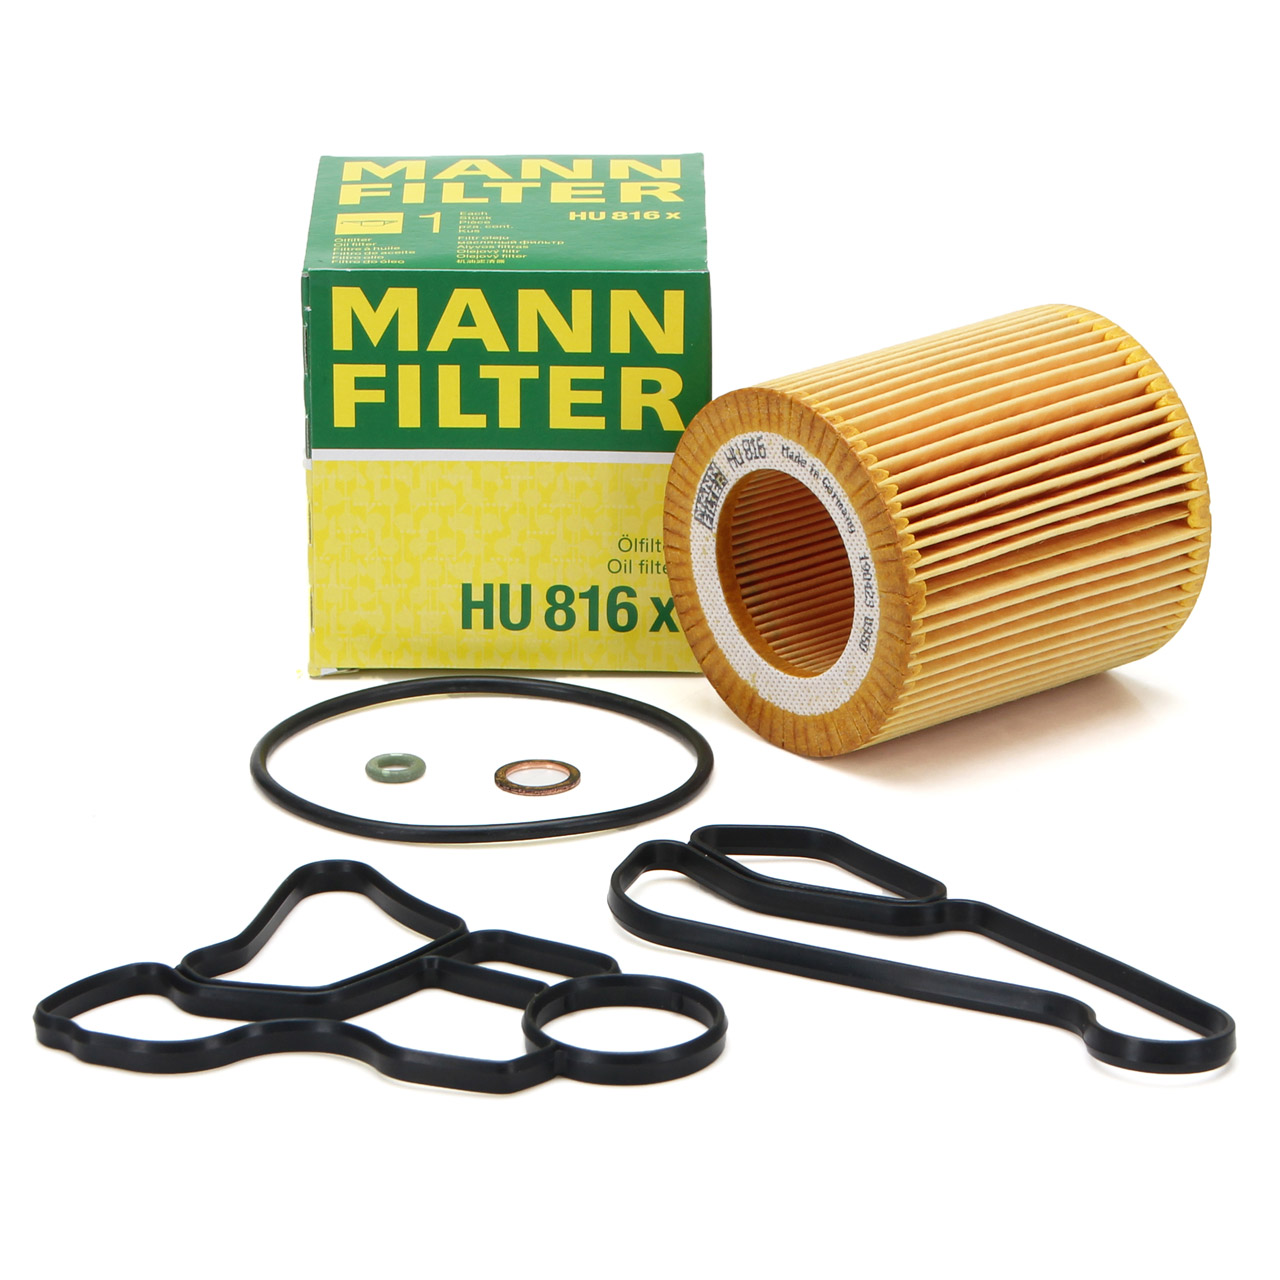 MANN-FILTER Ölfilter - HU 816 x, 1550117, 1476146 